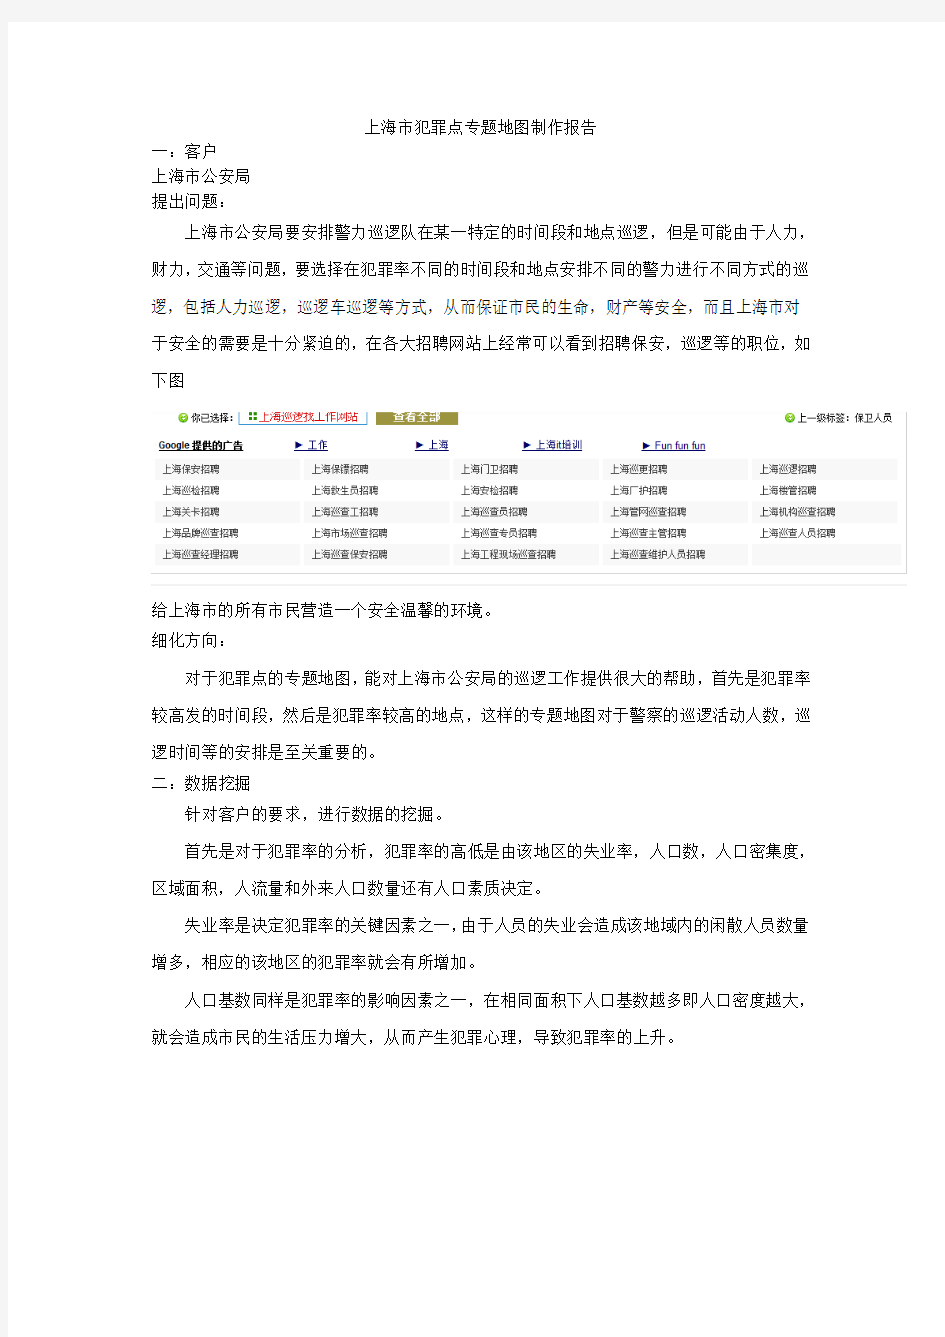 上海市犯罪点专题地图制作报告